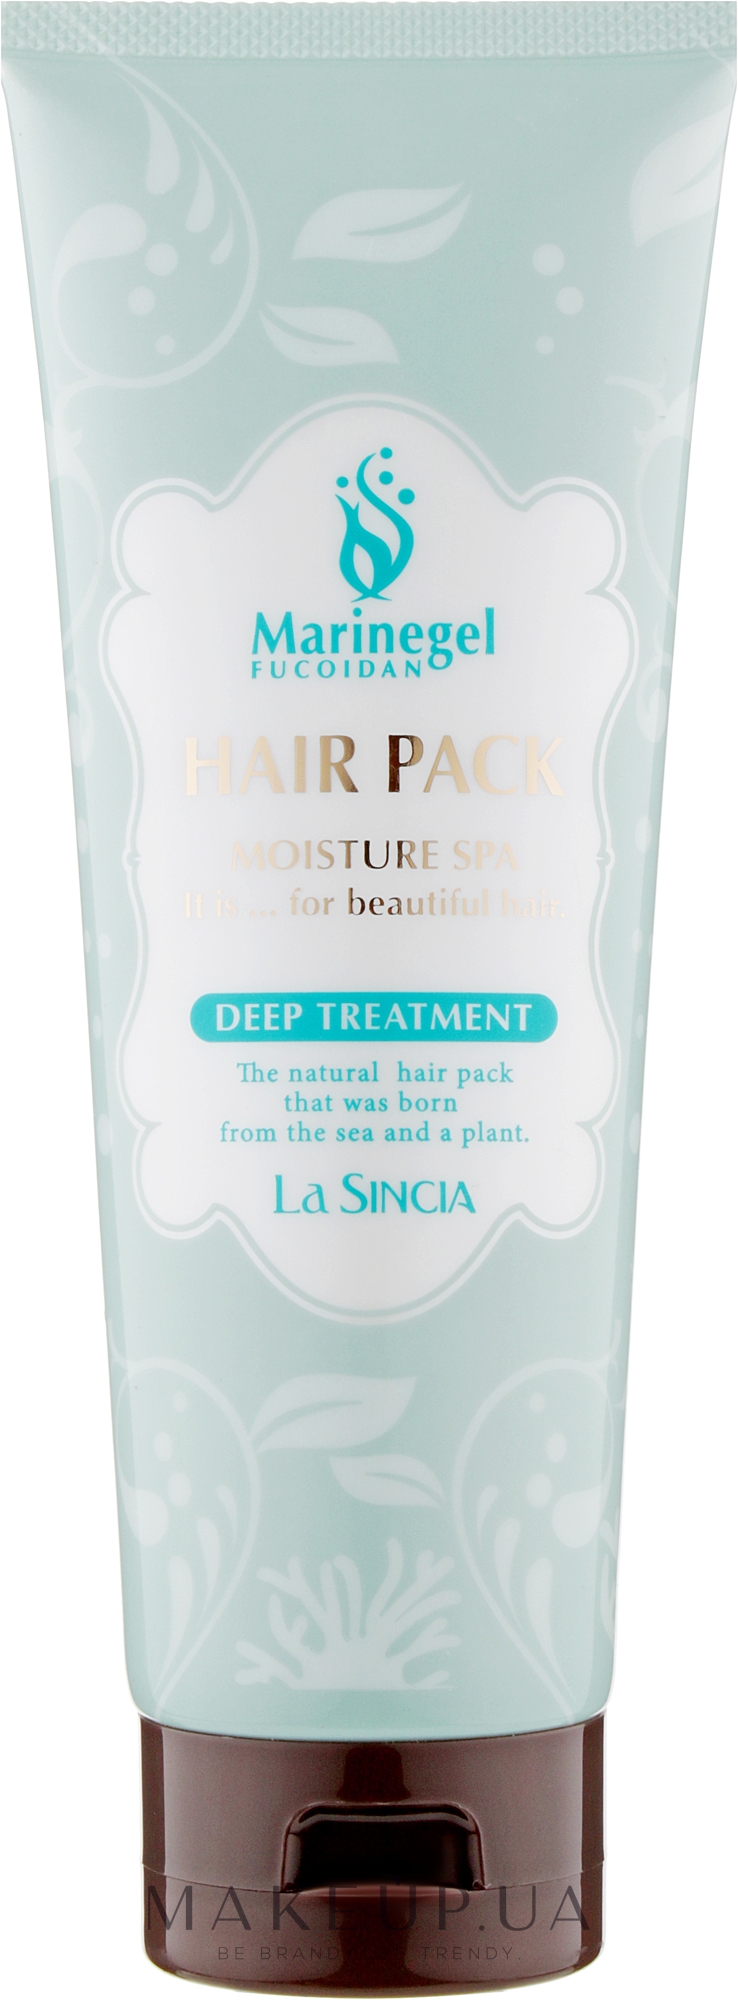 Интенсивная глубоко восстанавливающая антивозрастная маска для волос - La Sincere Hair Pack Deep Treatment — фото 250g